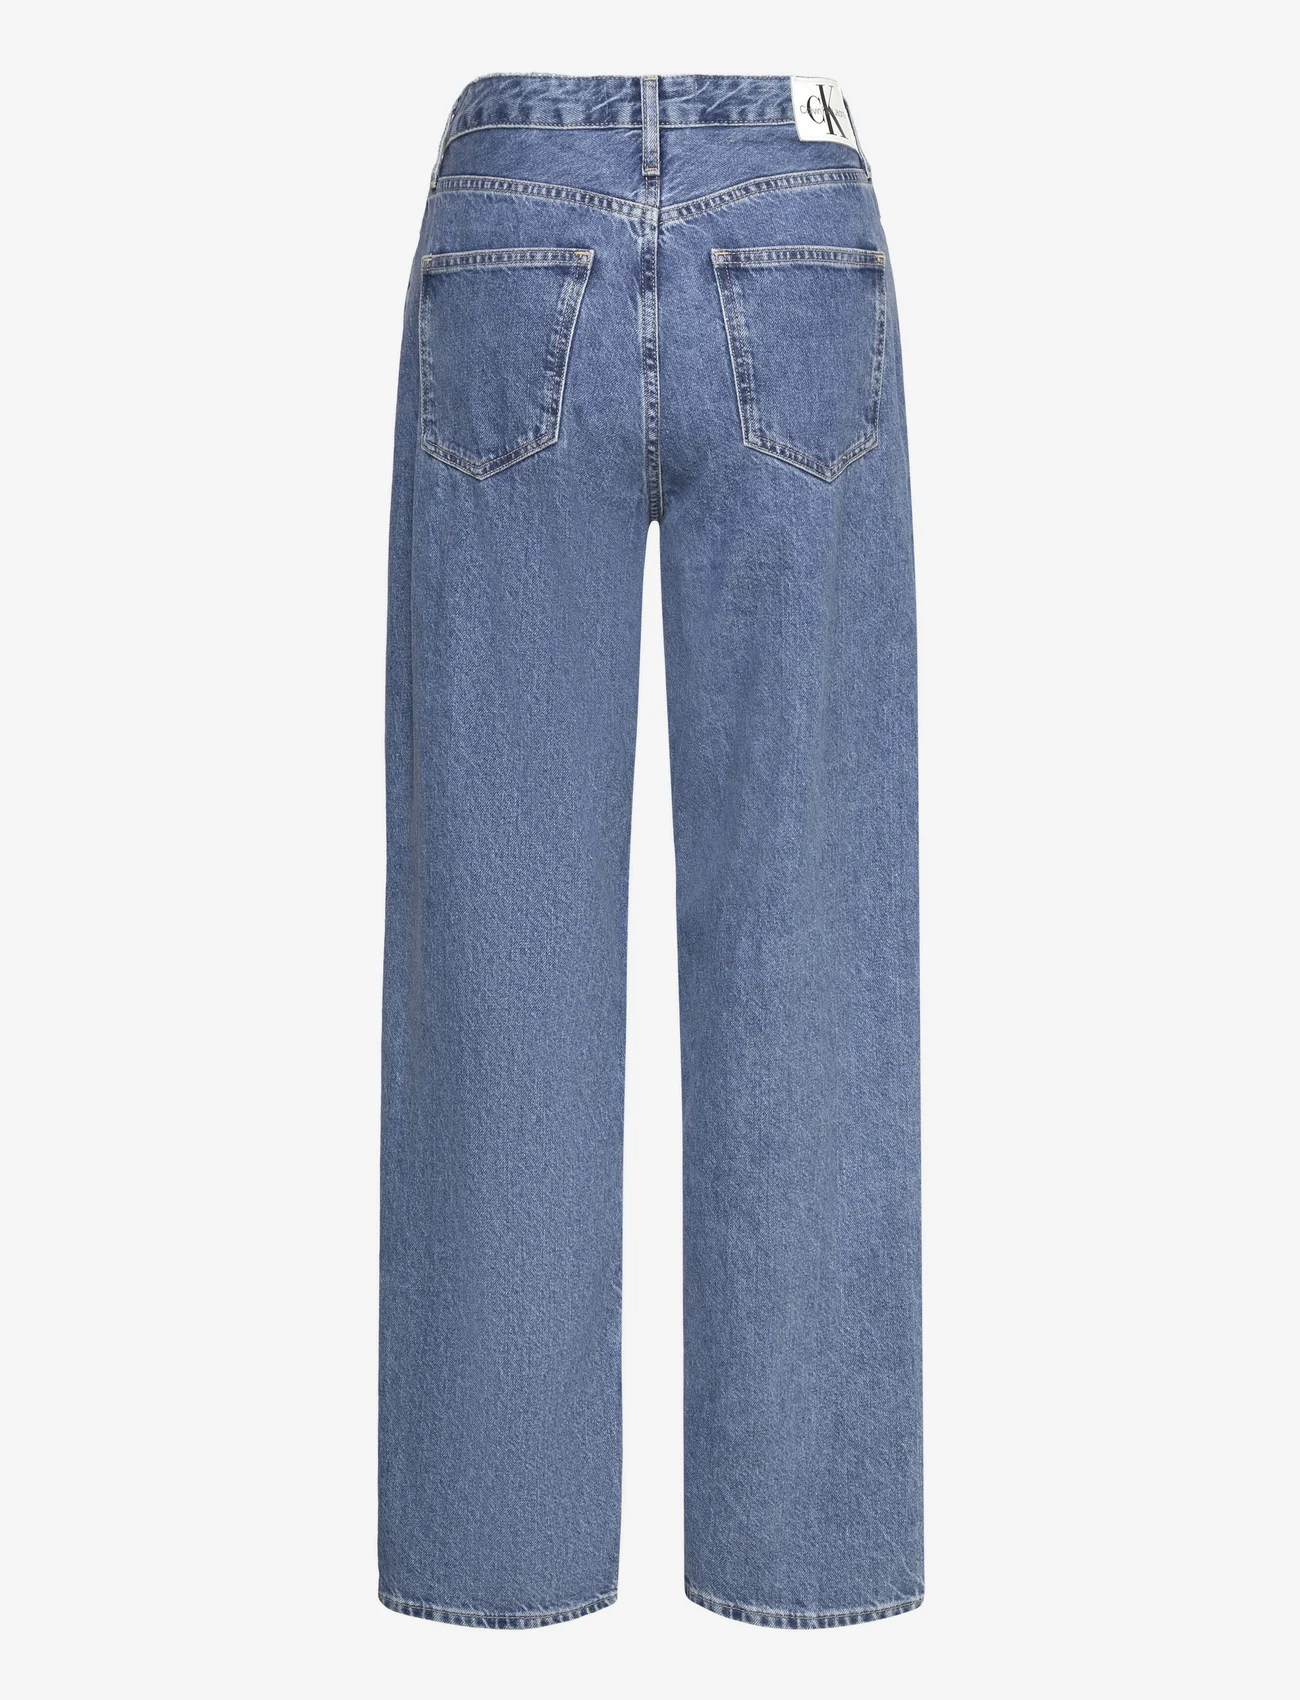 Calvin Klein Jeans - 90S STRAIGHT - tiesaus kirpimo džinsai - denim medium - 1